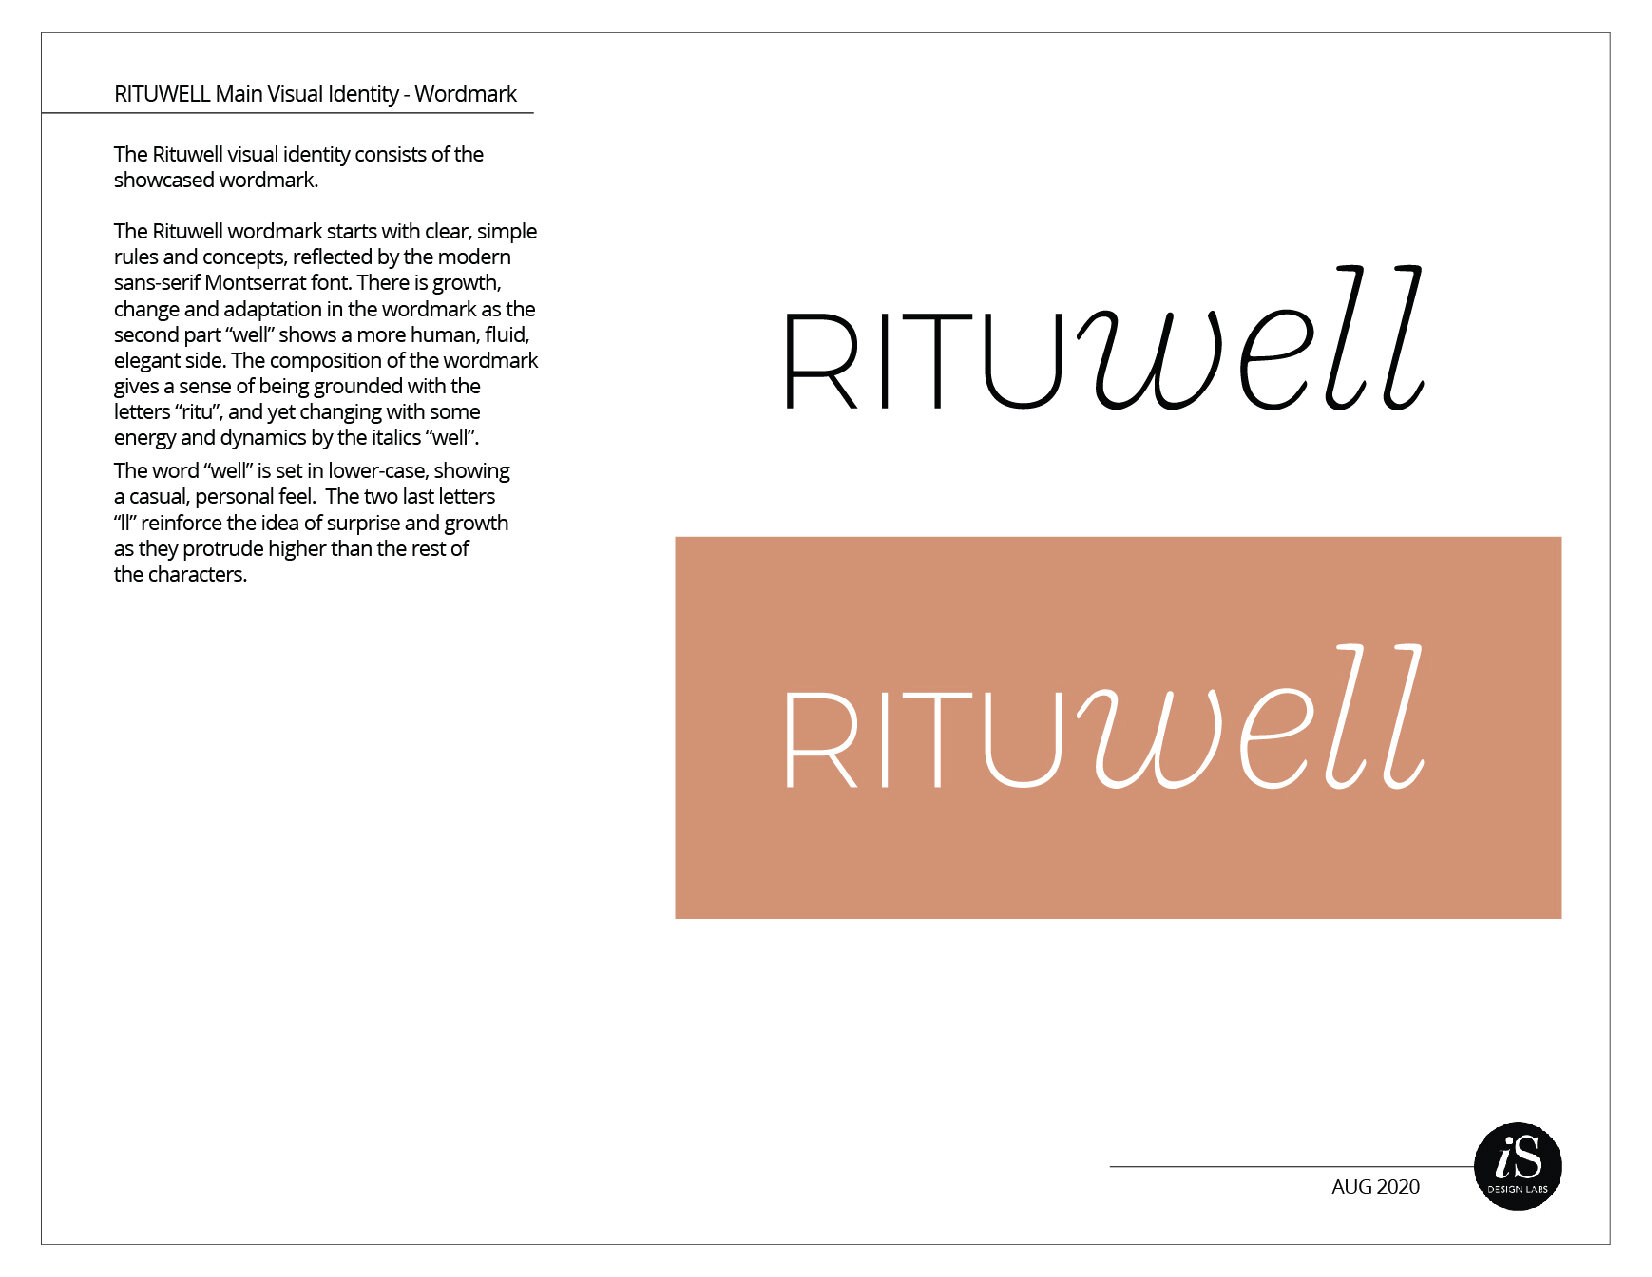 Rituwell BrandStandards wframe-09.jpg